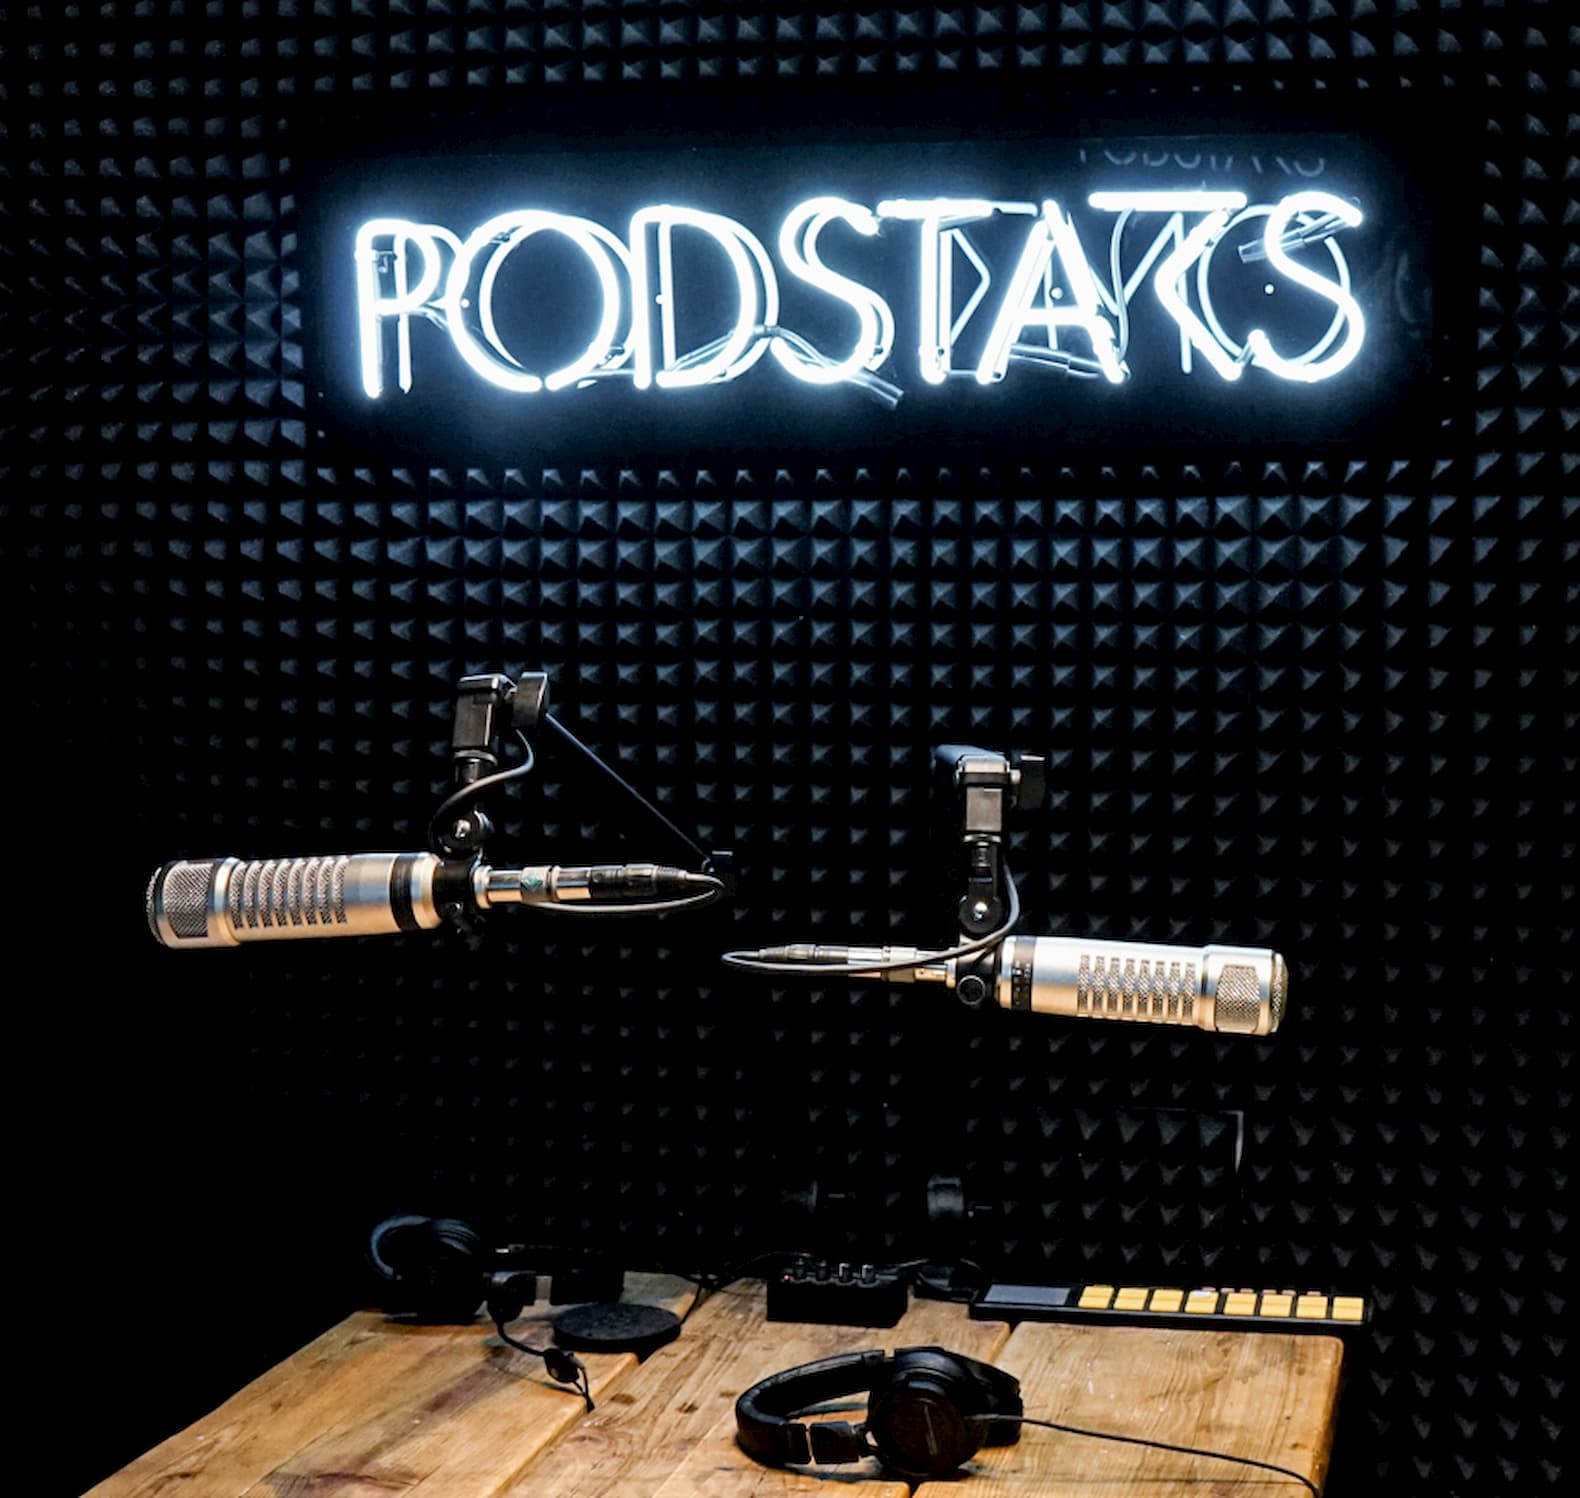 Das Podcast-Studio von Podstars